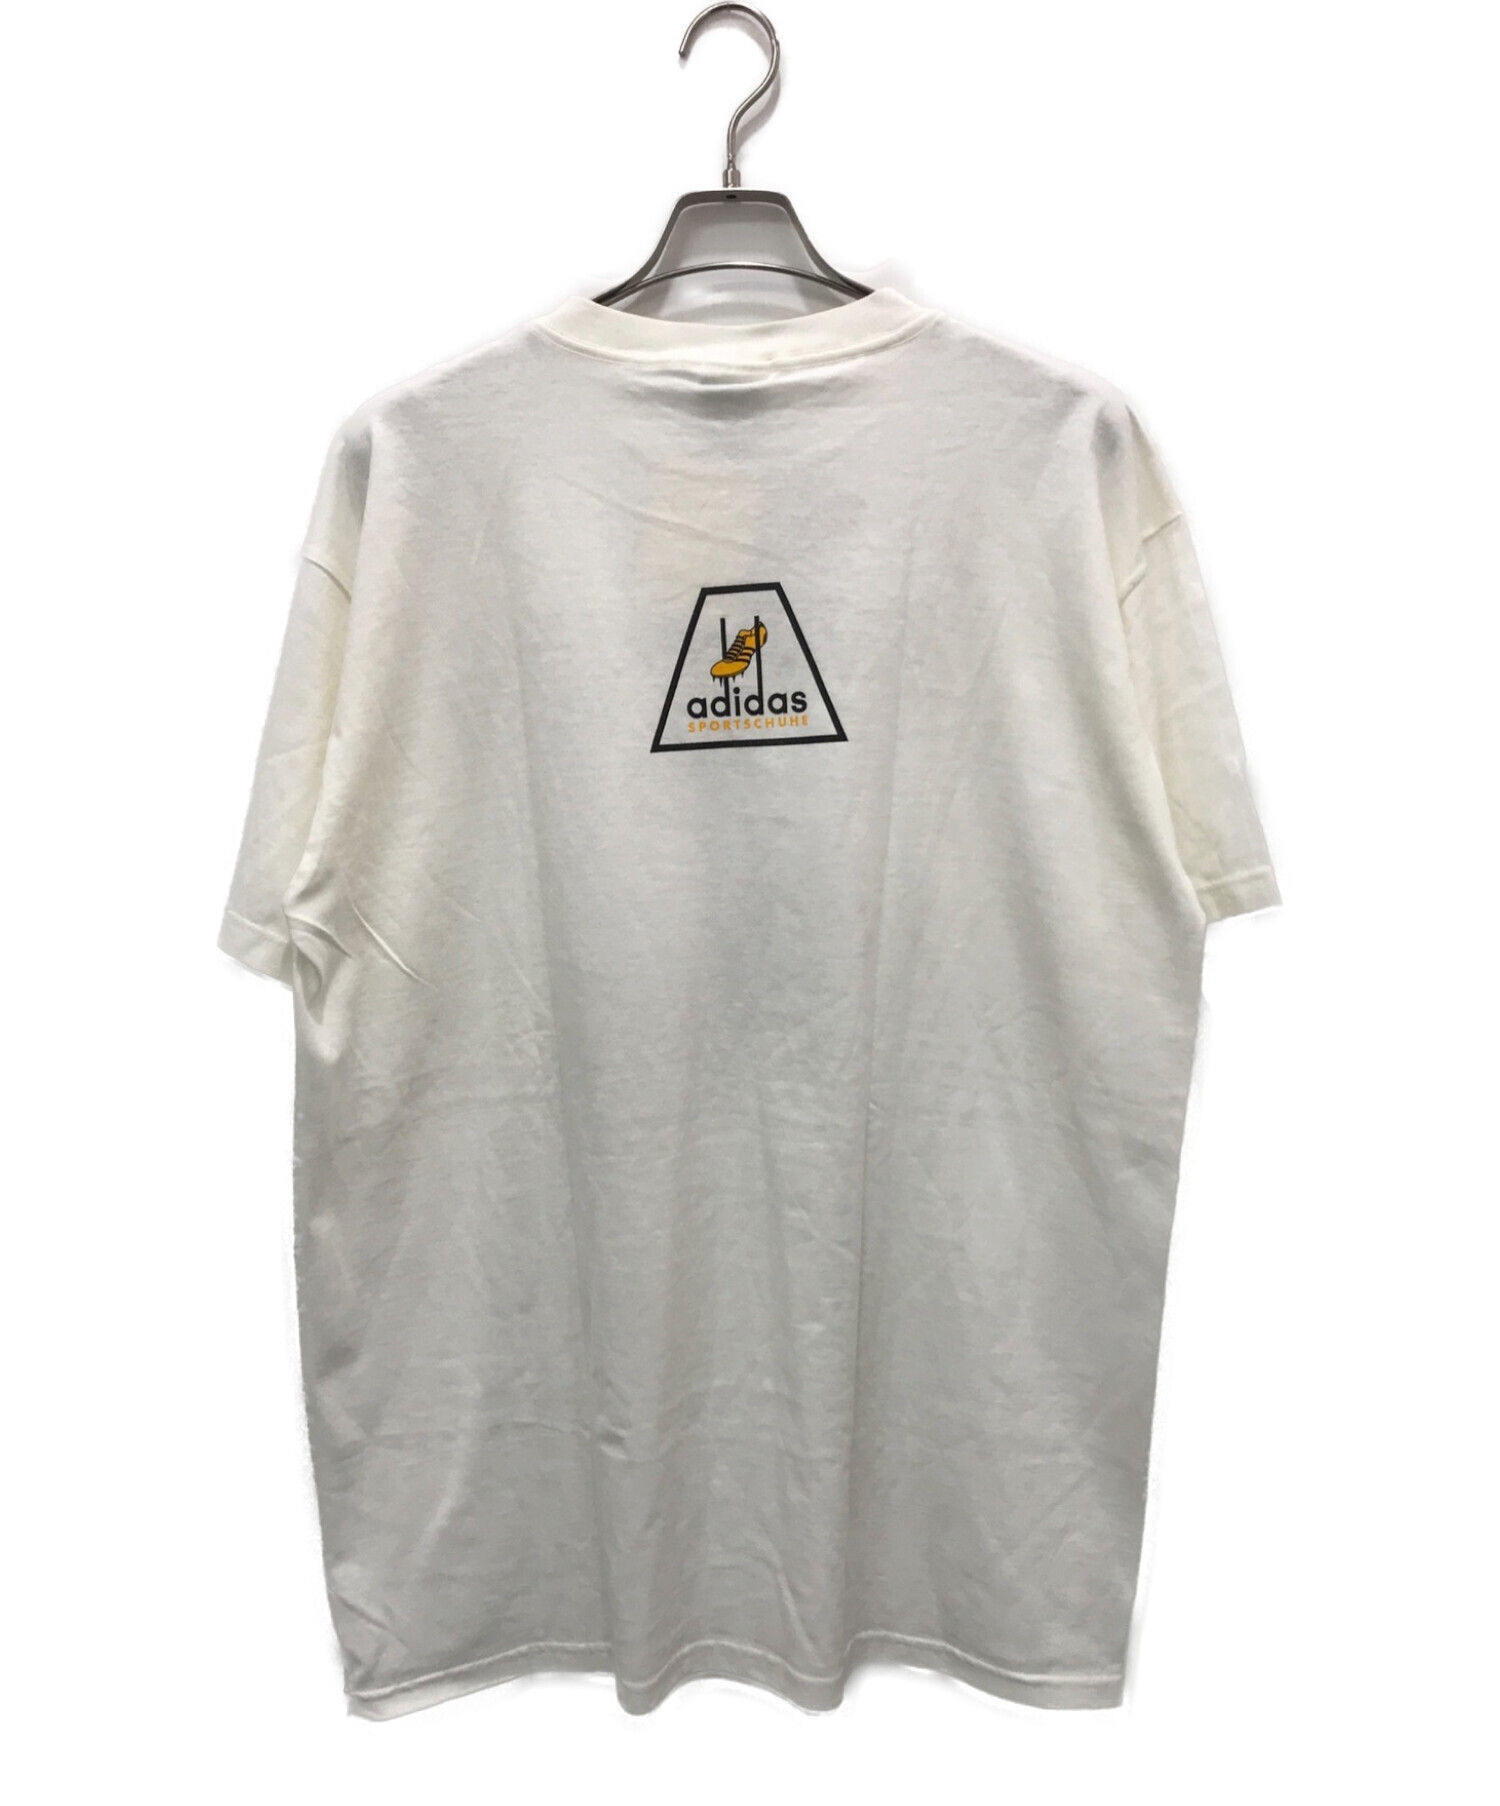 adidas (アディダス) 90’SプリントTシャツ ホワイト サイズ:L